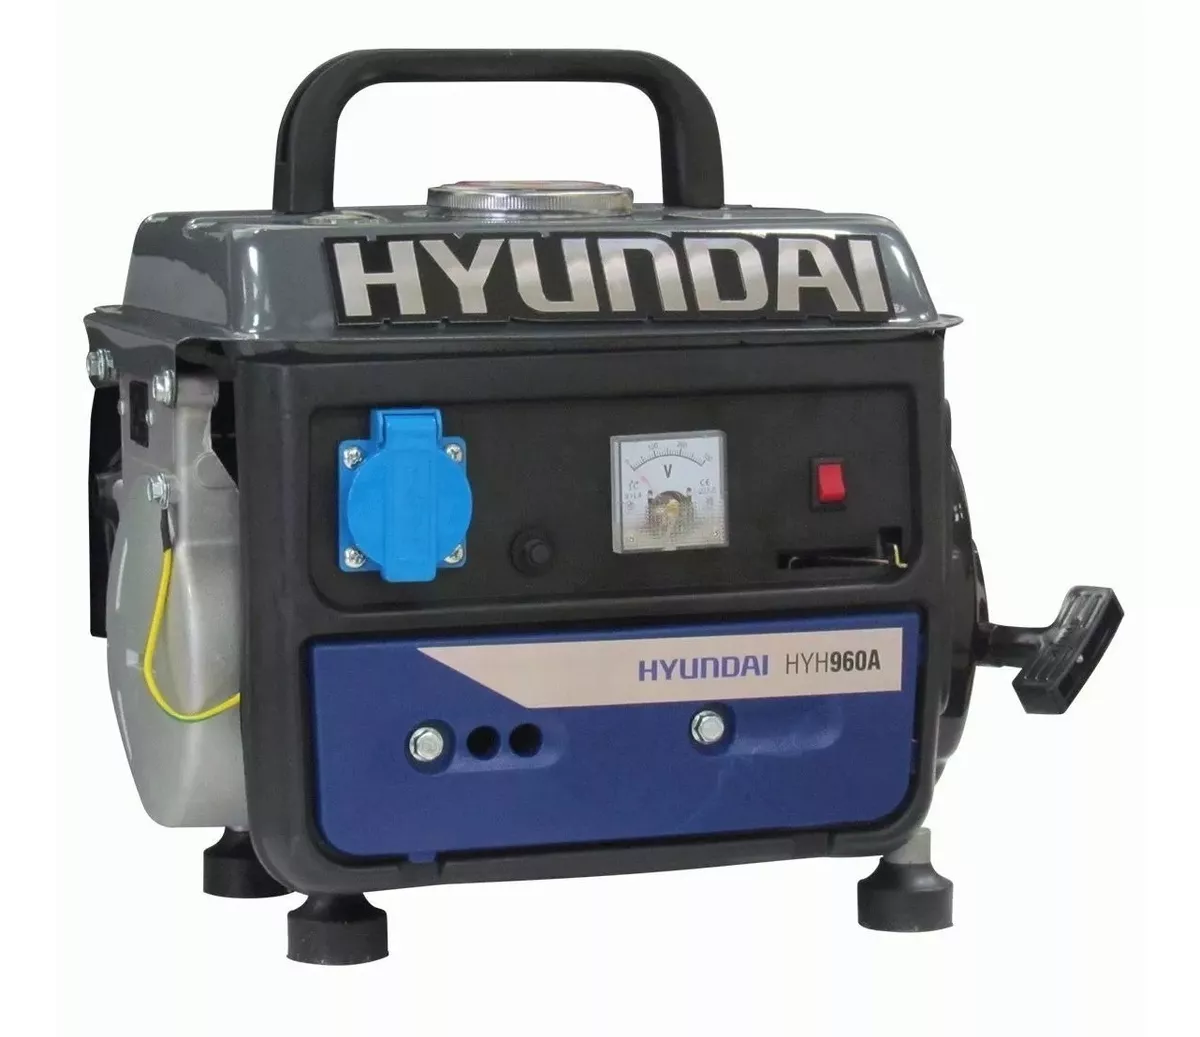 Primera imagen para búsqueda de generador hyundai